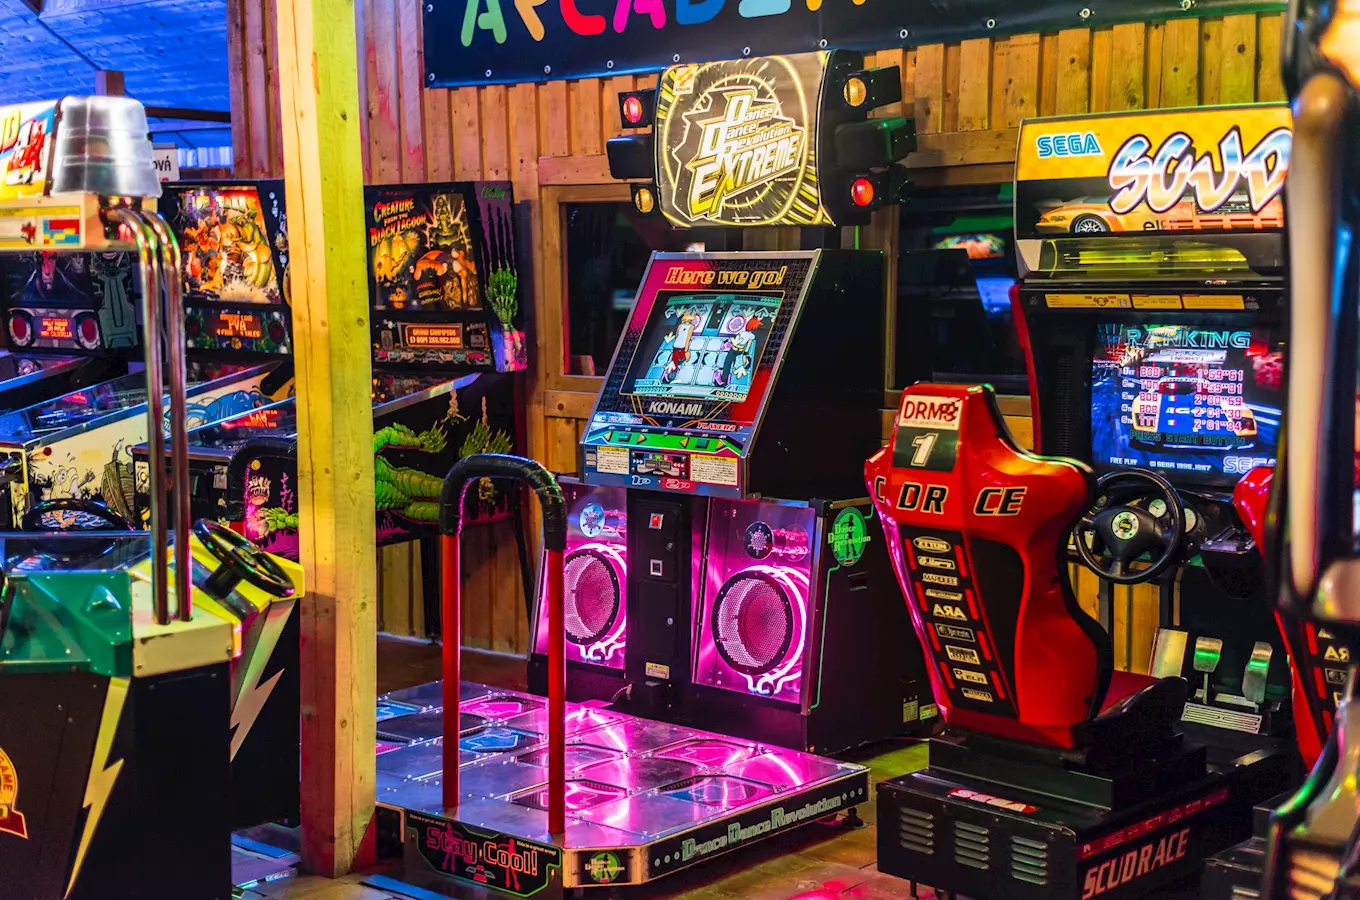 Arcade Hry – legendární retroherní zábavní centrum věnované arkádovým videohrám